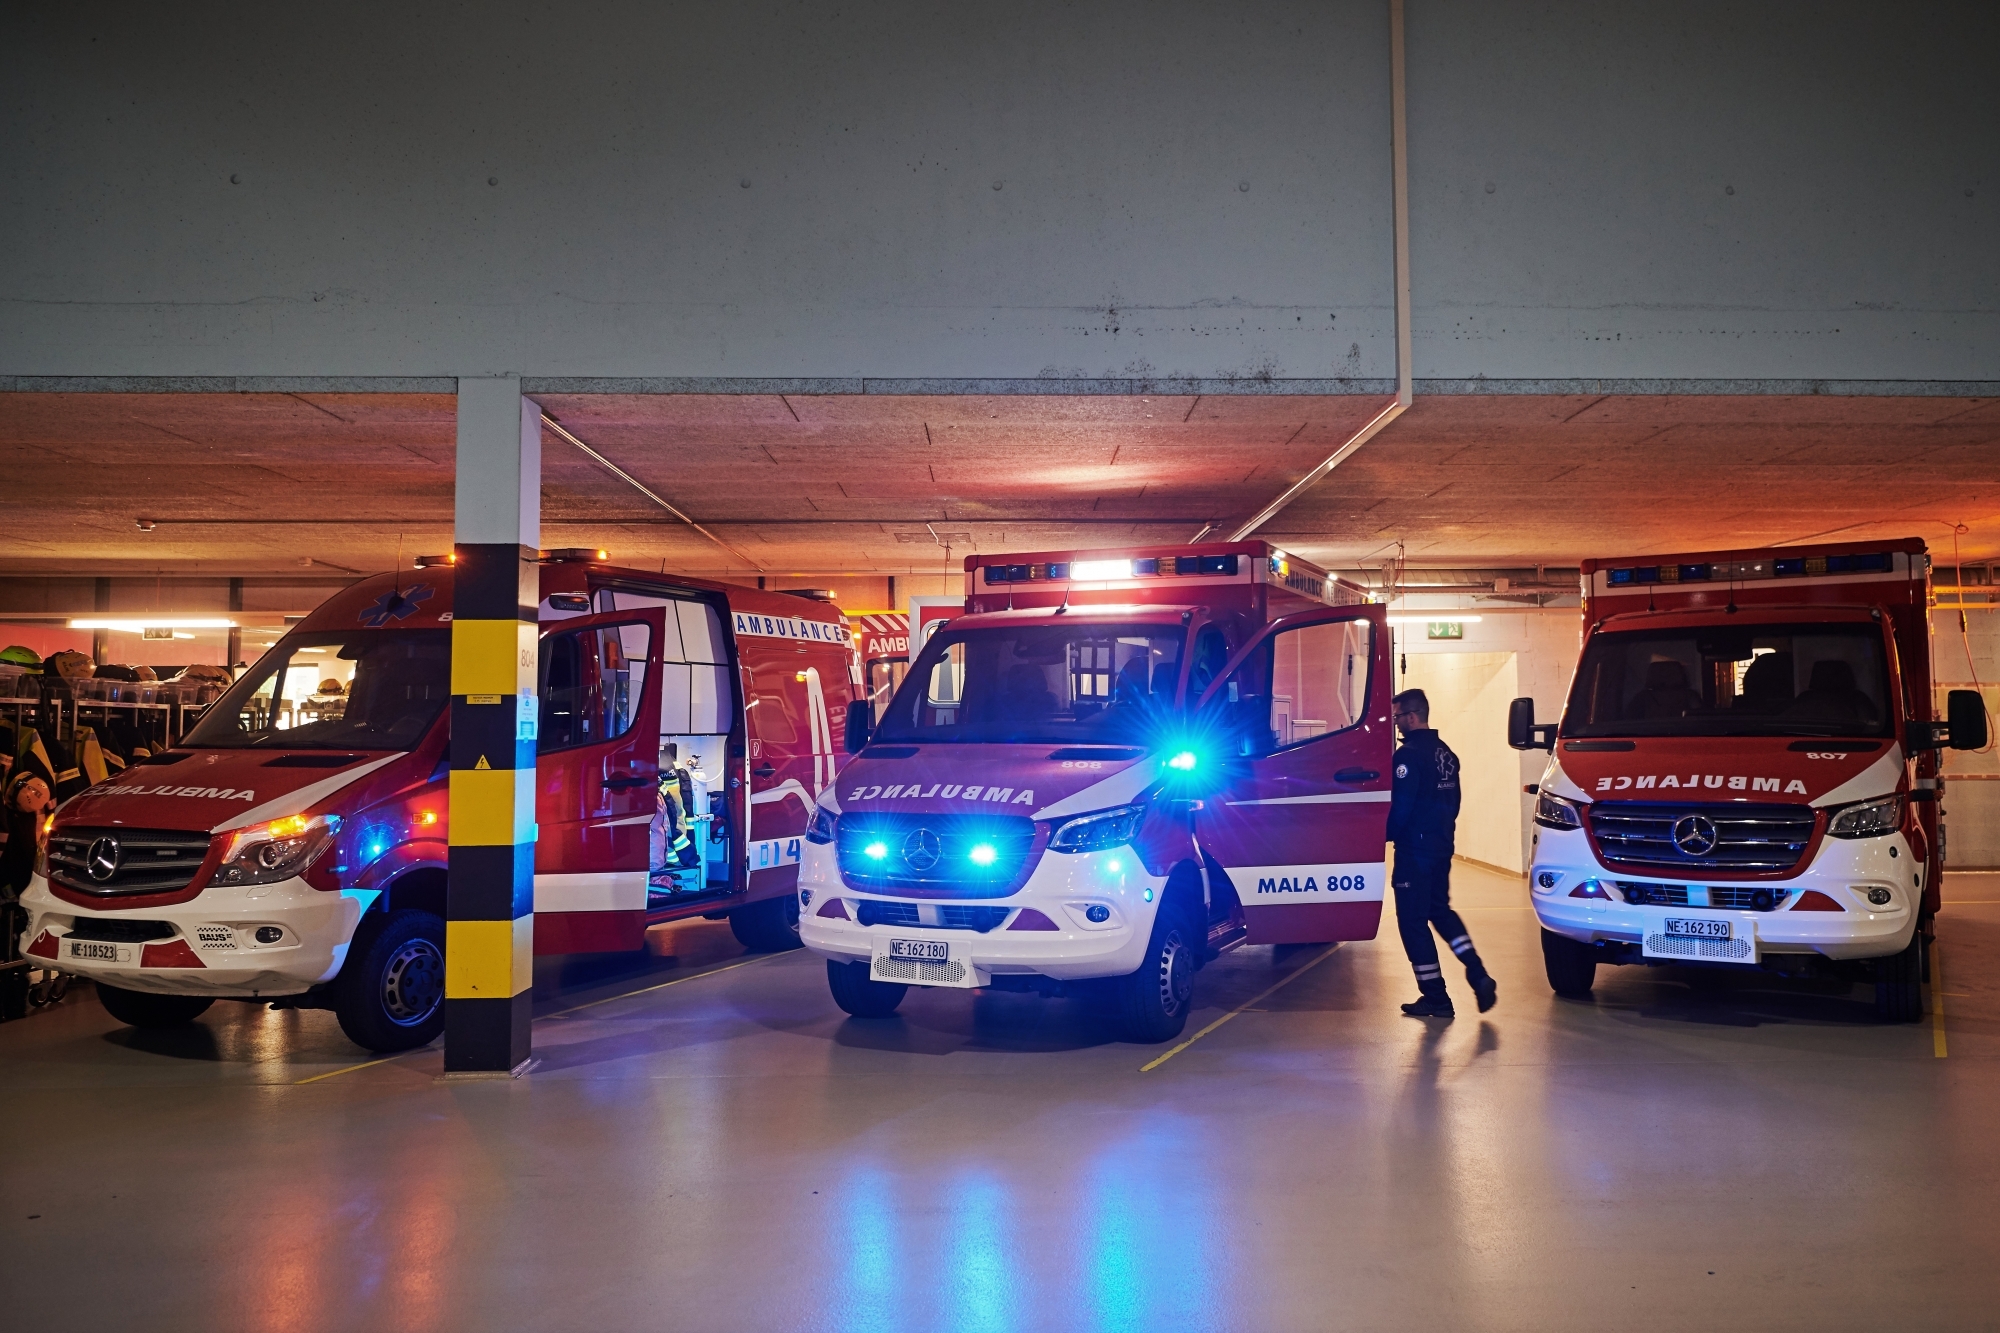 Les ambulances neuchâteloises (ici dans la caserne de Neuchâtel) sont intervenues sur les deux accidents concernant des piétons renversés.